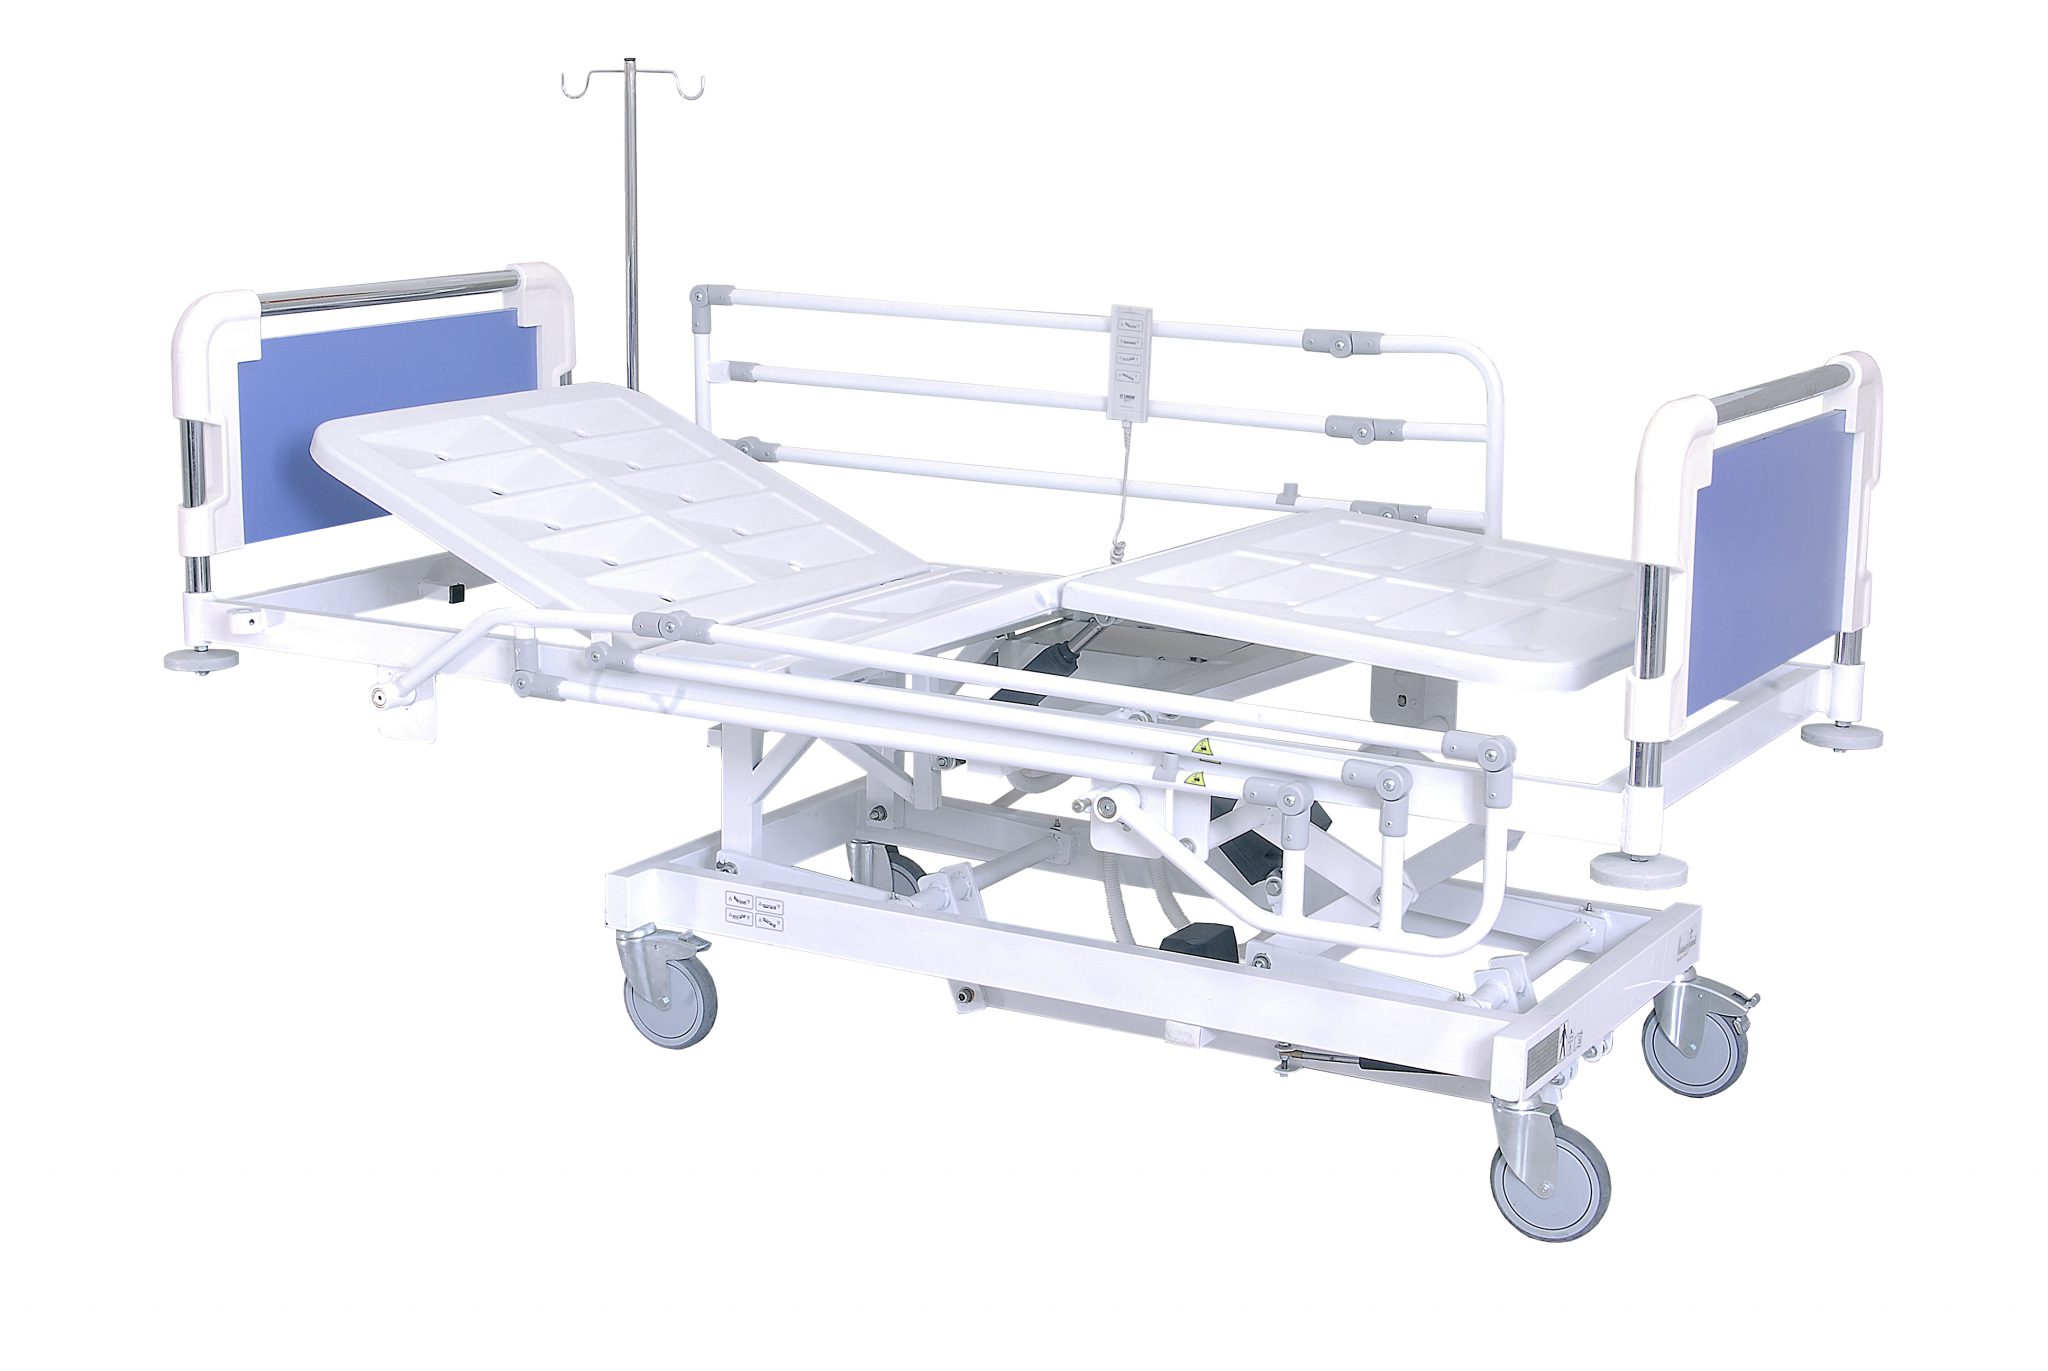 تخت بیمارستانی-تخت برقی سه شکن مدل A51 - خرید و قیمت تخت بیمارستانی-تخت برقی سه شکن مدل A51 - تجهیزات پزشکی خاکباز